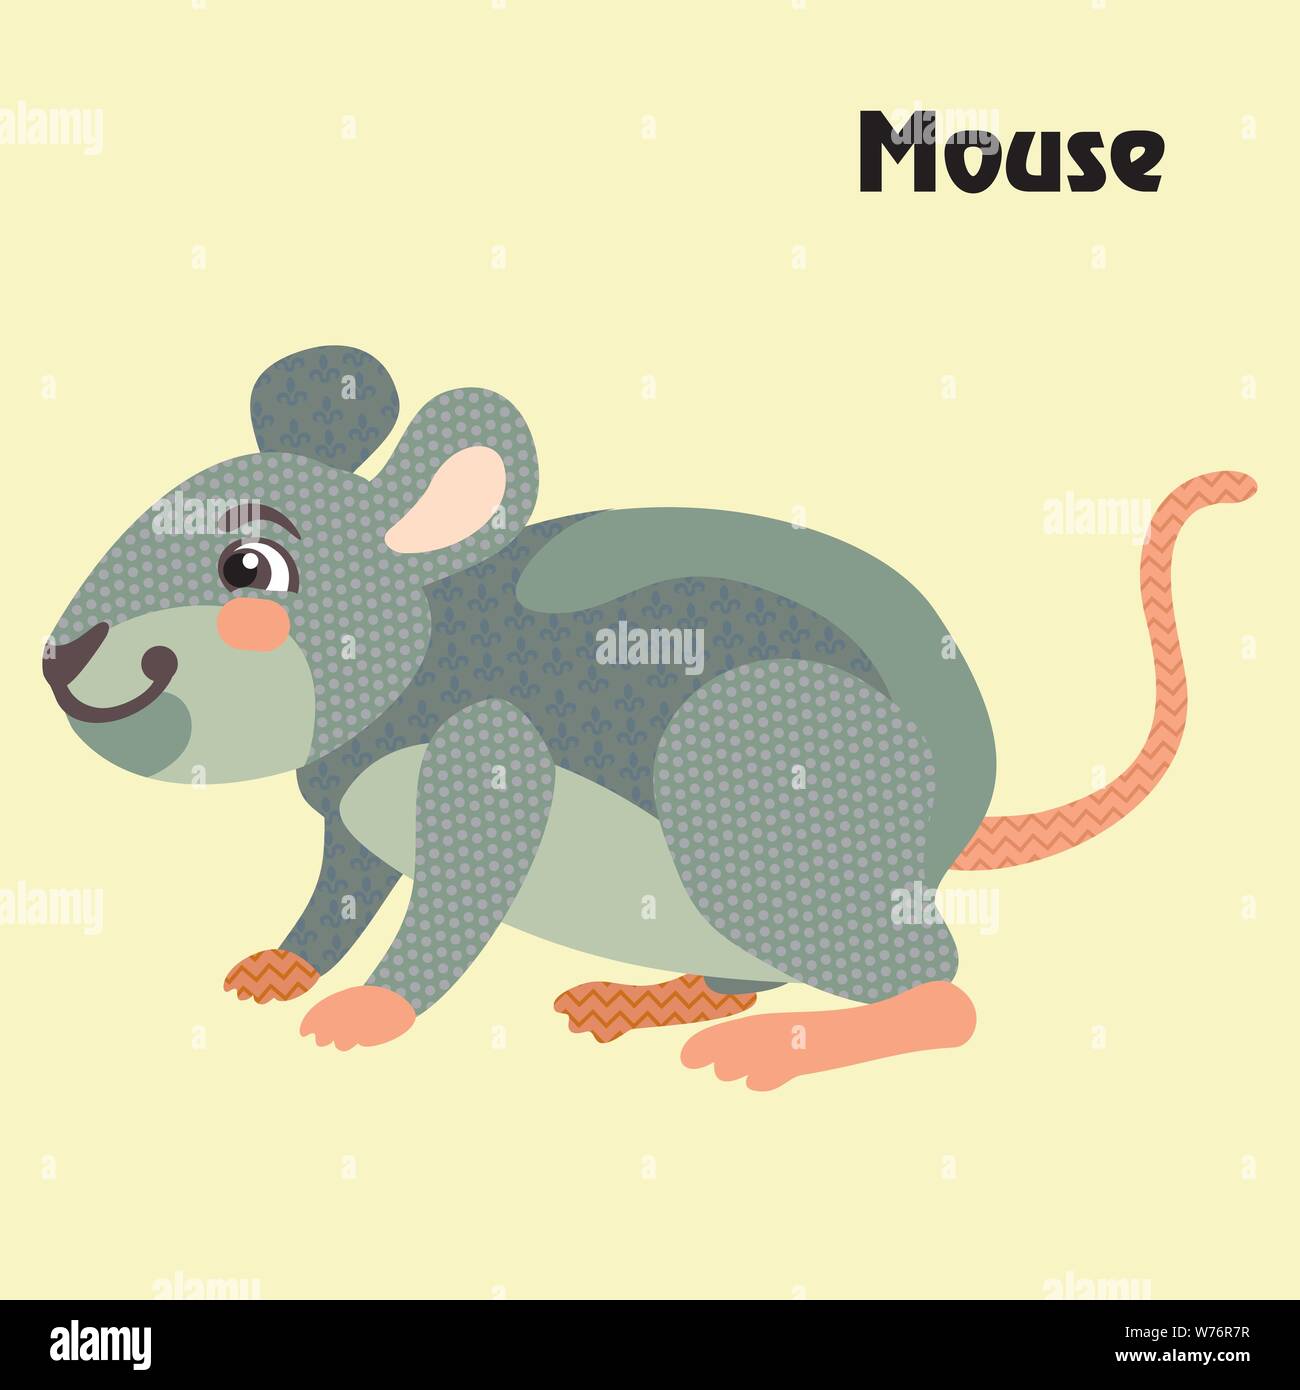 Bunt dekorativ Umrisse lustig bunte Maus steht im Profil. Heimische Tiere und Vögel Vektor cartoon Flachbild Abbildung in verschiedenen Farben Stock Vektor